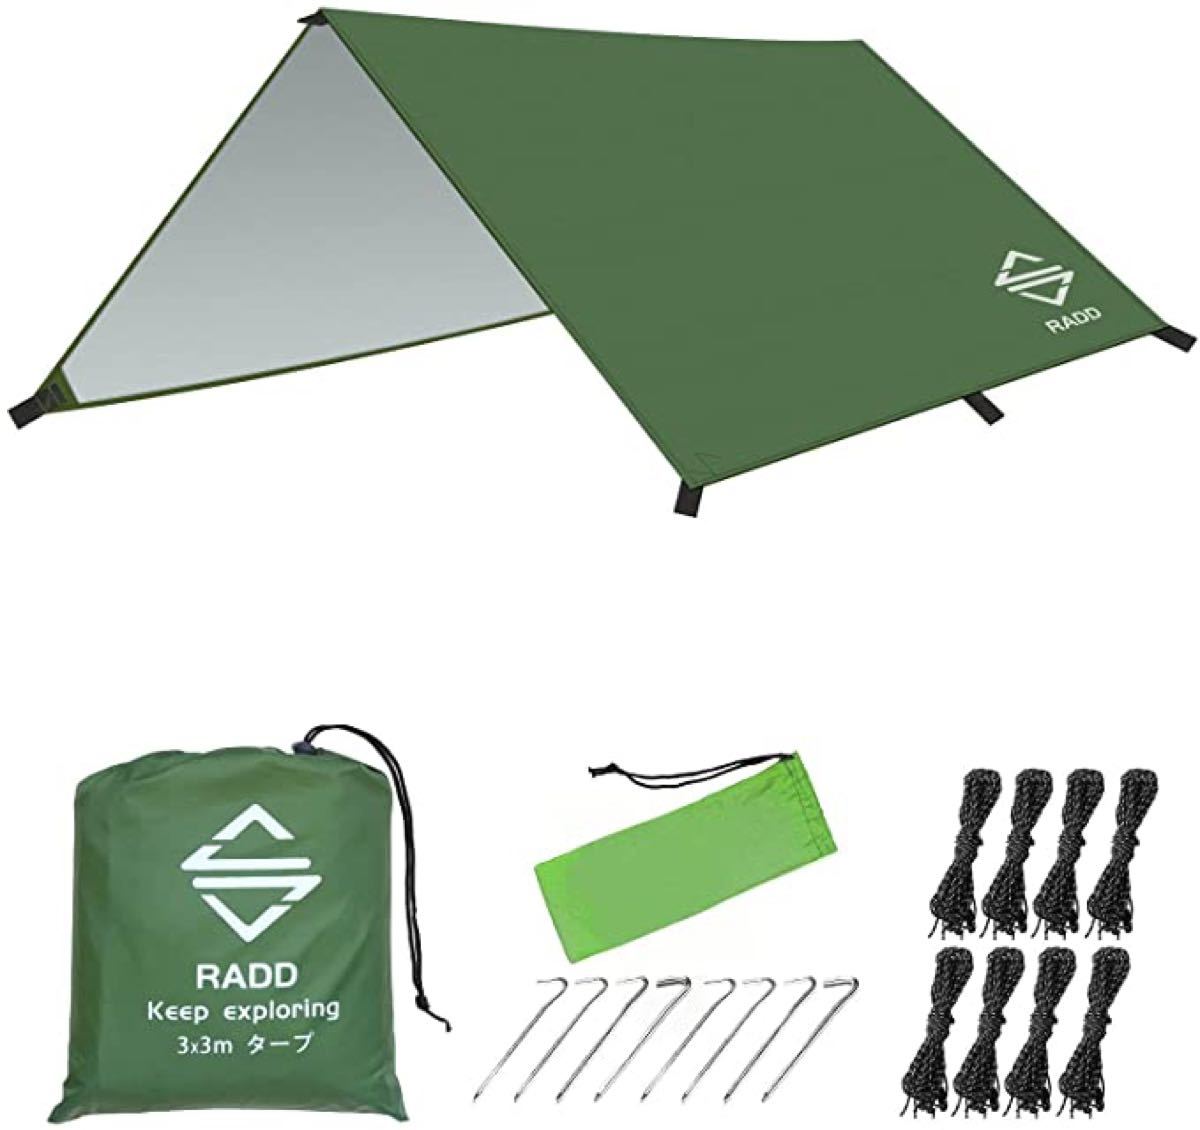 タープ　RADD 防水タープ キャンプ タープ テント 大型 軽量 紫外線 新品